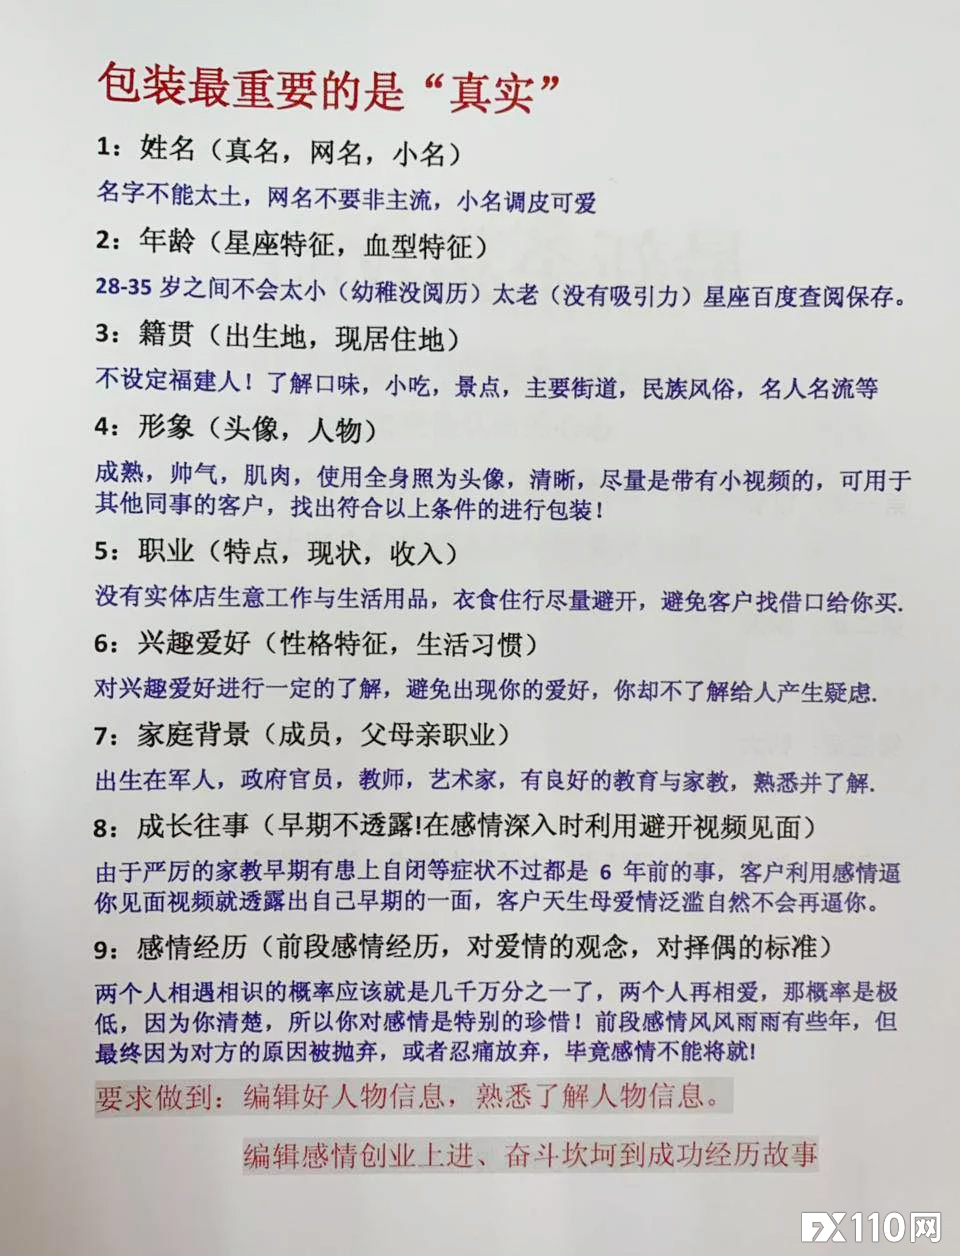 【汇查查曝光】杀猪盘重现江湖，福汇国际被湖南省双峰县人民检察院起诉